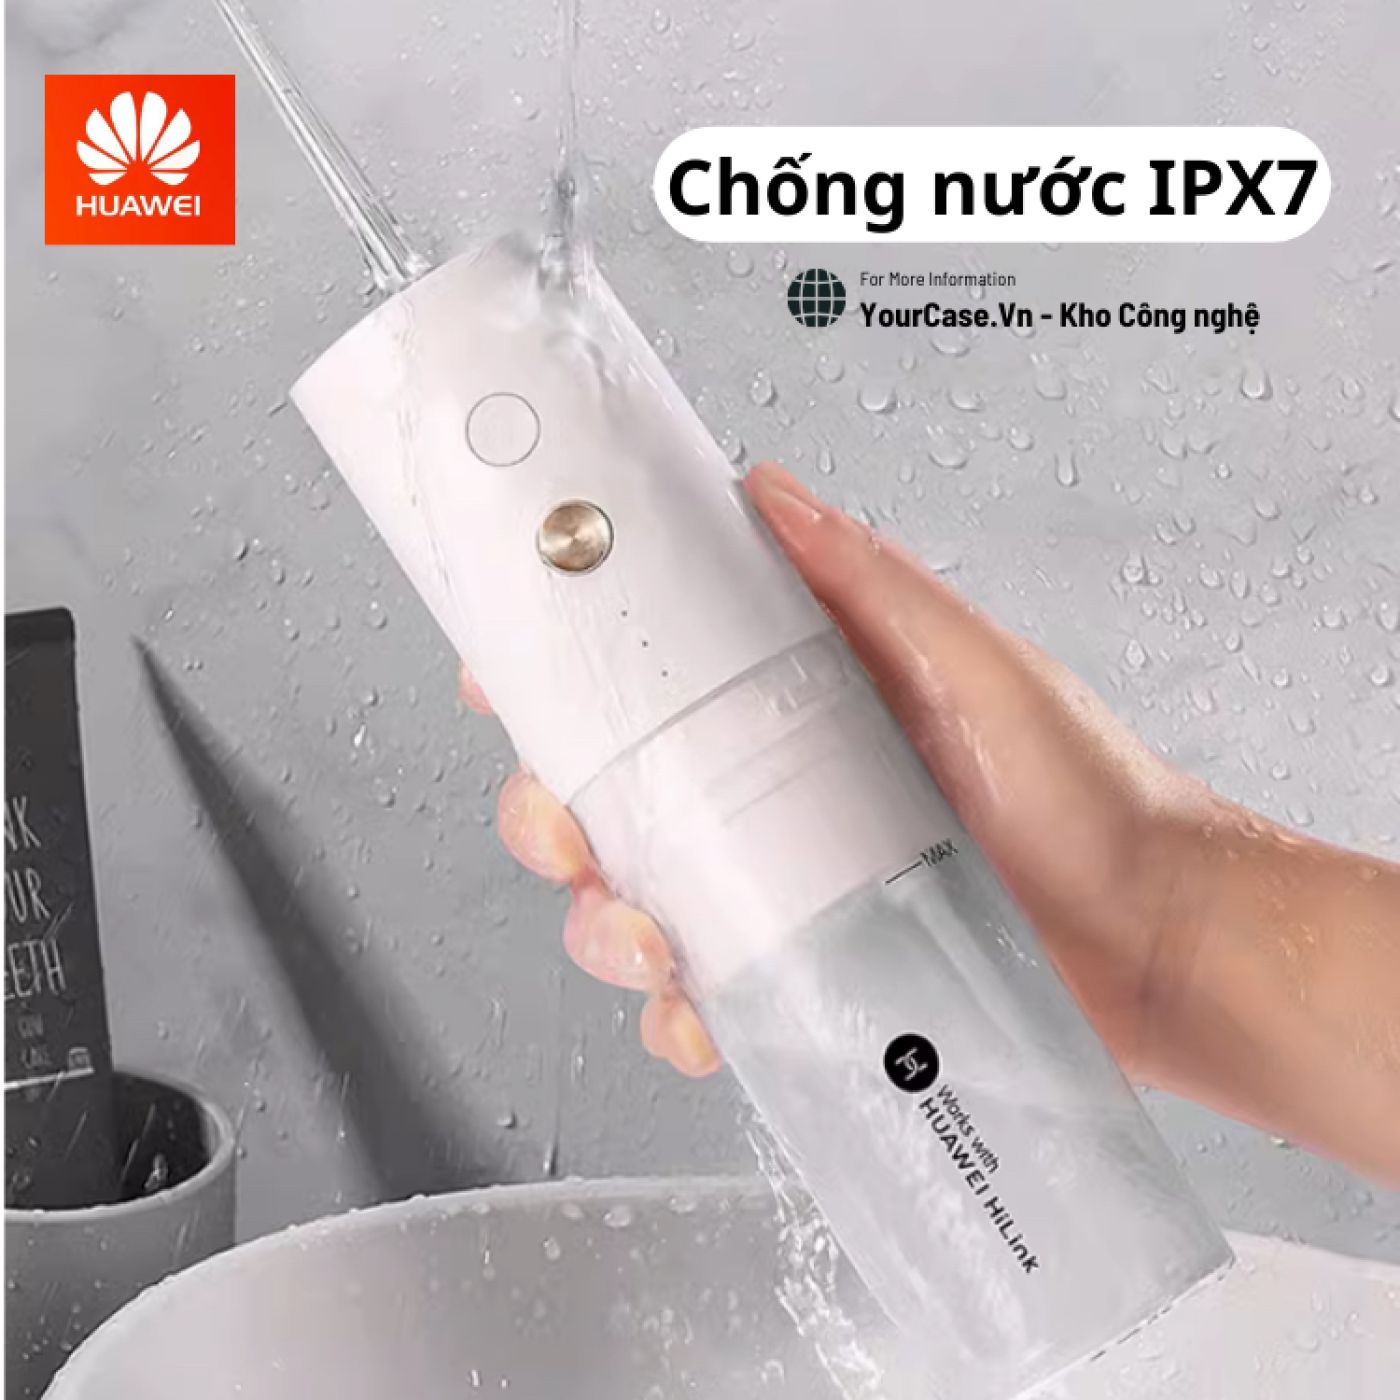 Máy Tăm Nước Cầm Tay Huawei APIYOO - Tăm nước vệ sinh răng miệng Chính Hãng tiện dụng, kết Nối app